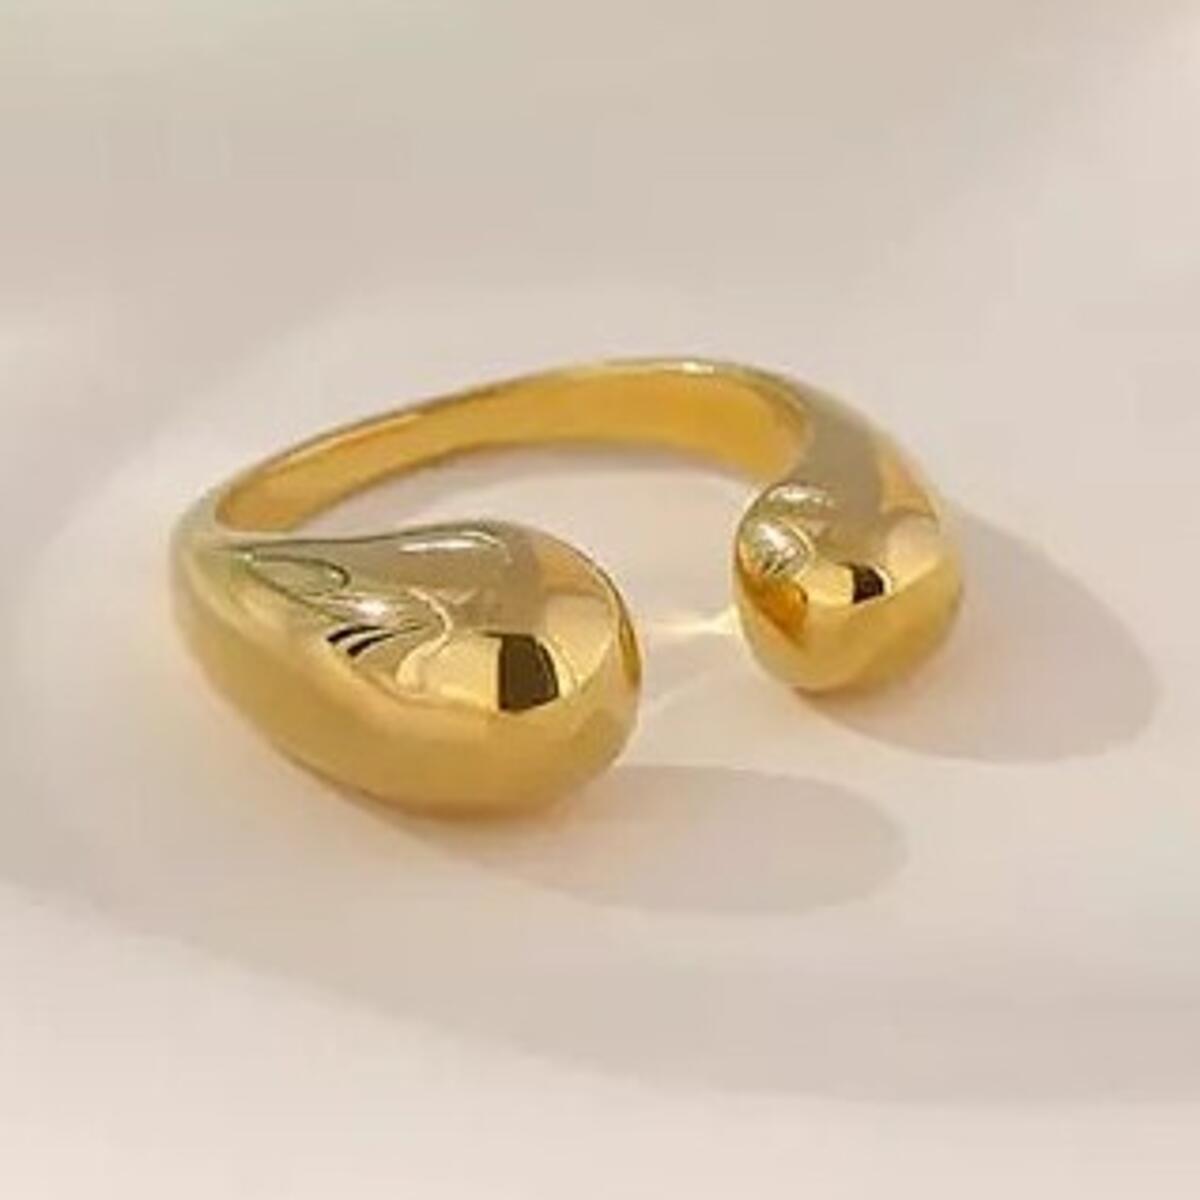 Elani Ring Gold R3332D